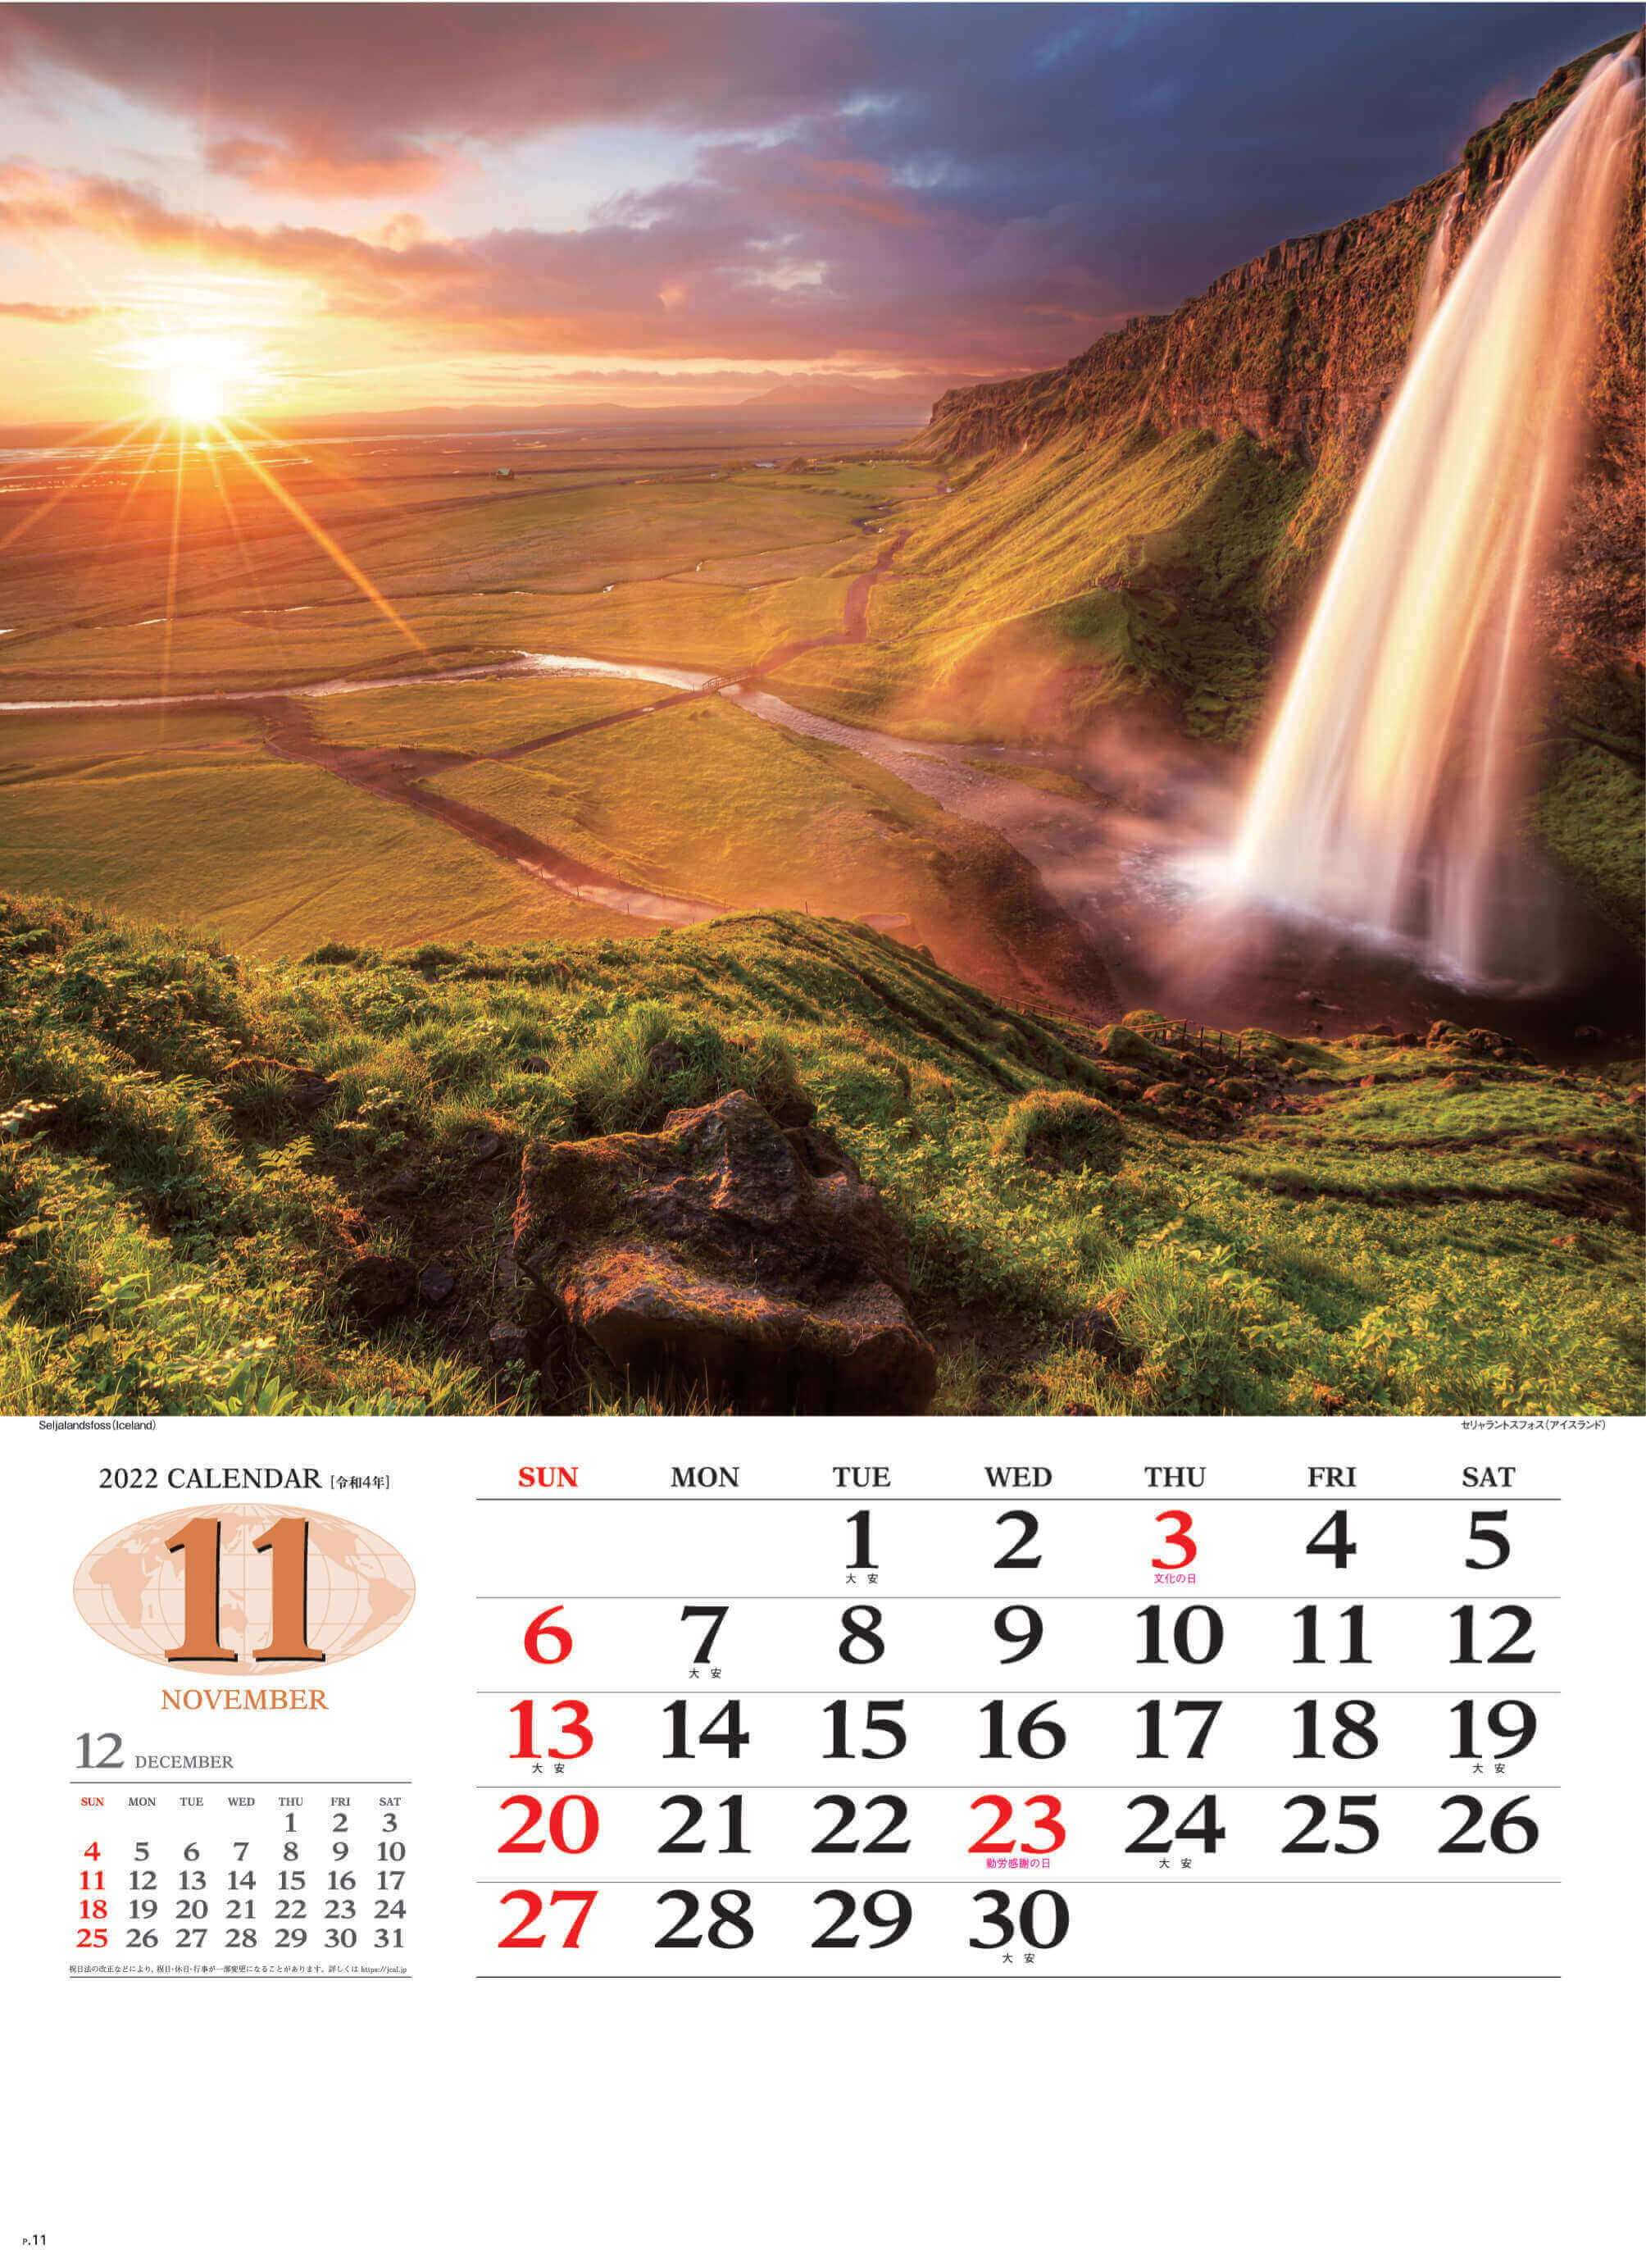 11月 セリャワントスフォス アイスランド 世界の景観 2022年カレンダーの画像